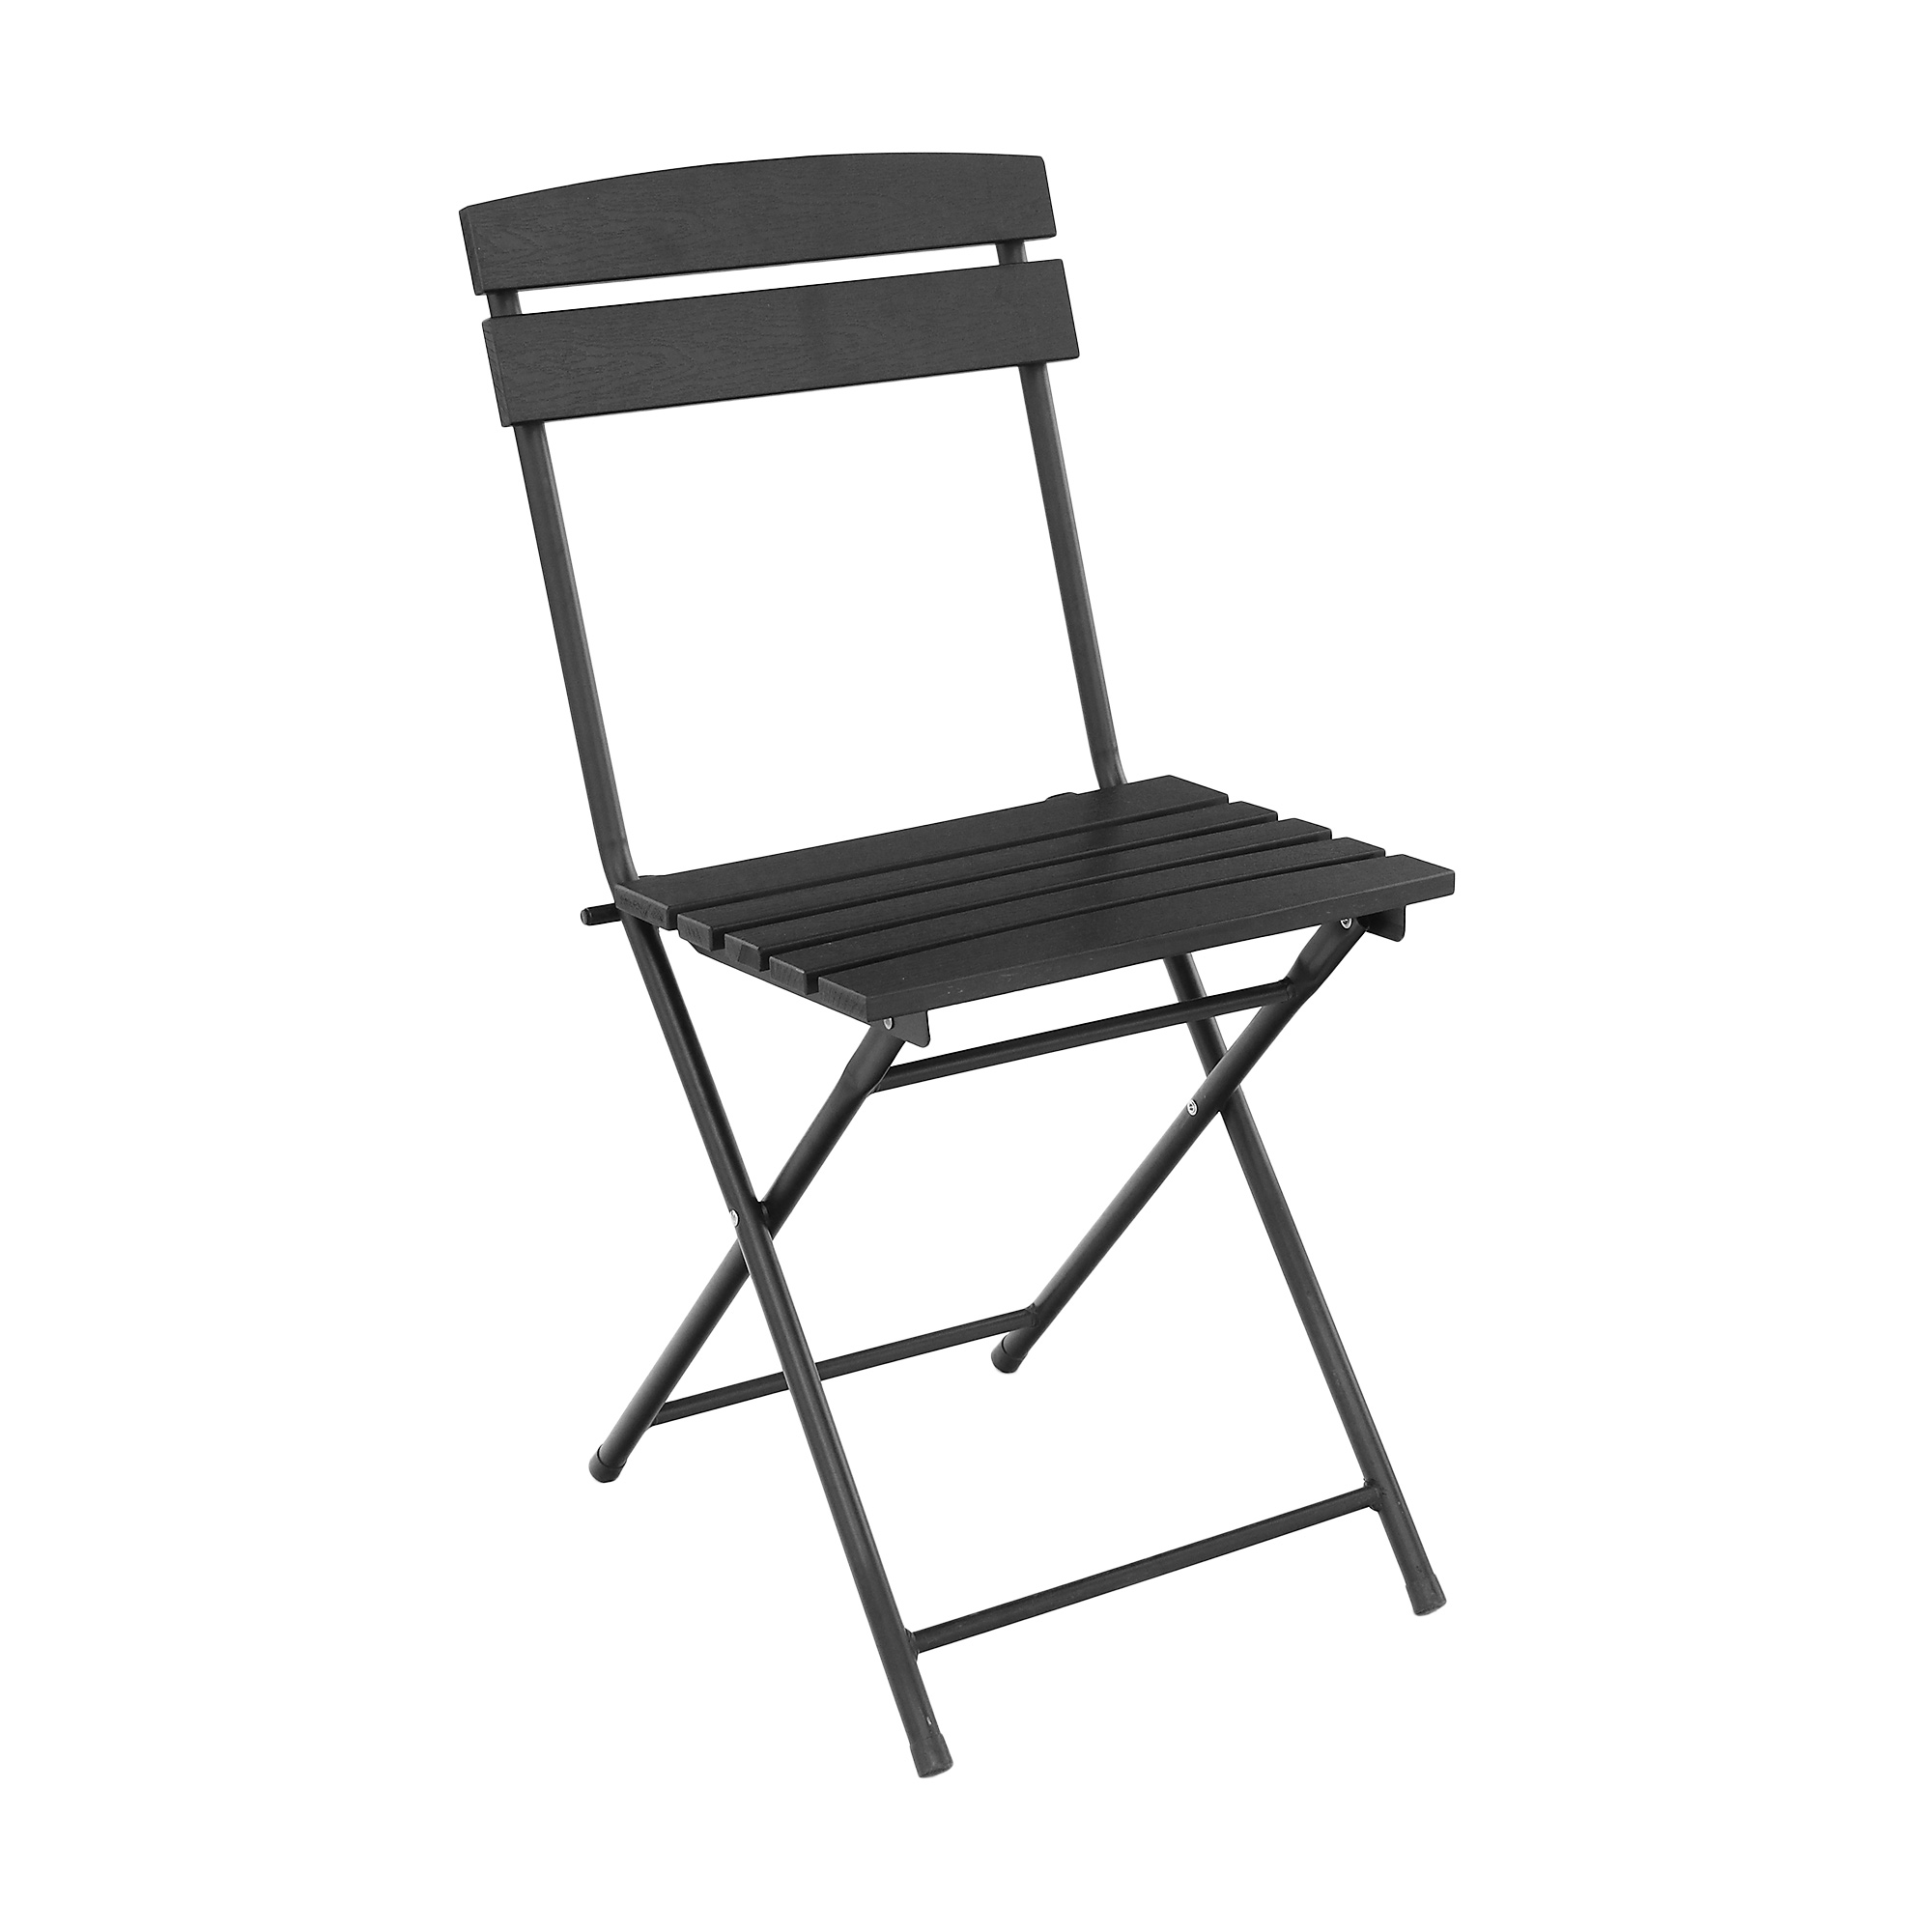 Набор садовой мебели Koopman furniture стол+2 стула, цвет черный, размер 60х60x70 см - фото 2